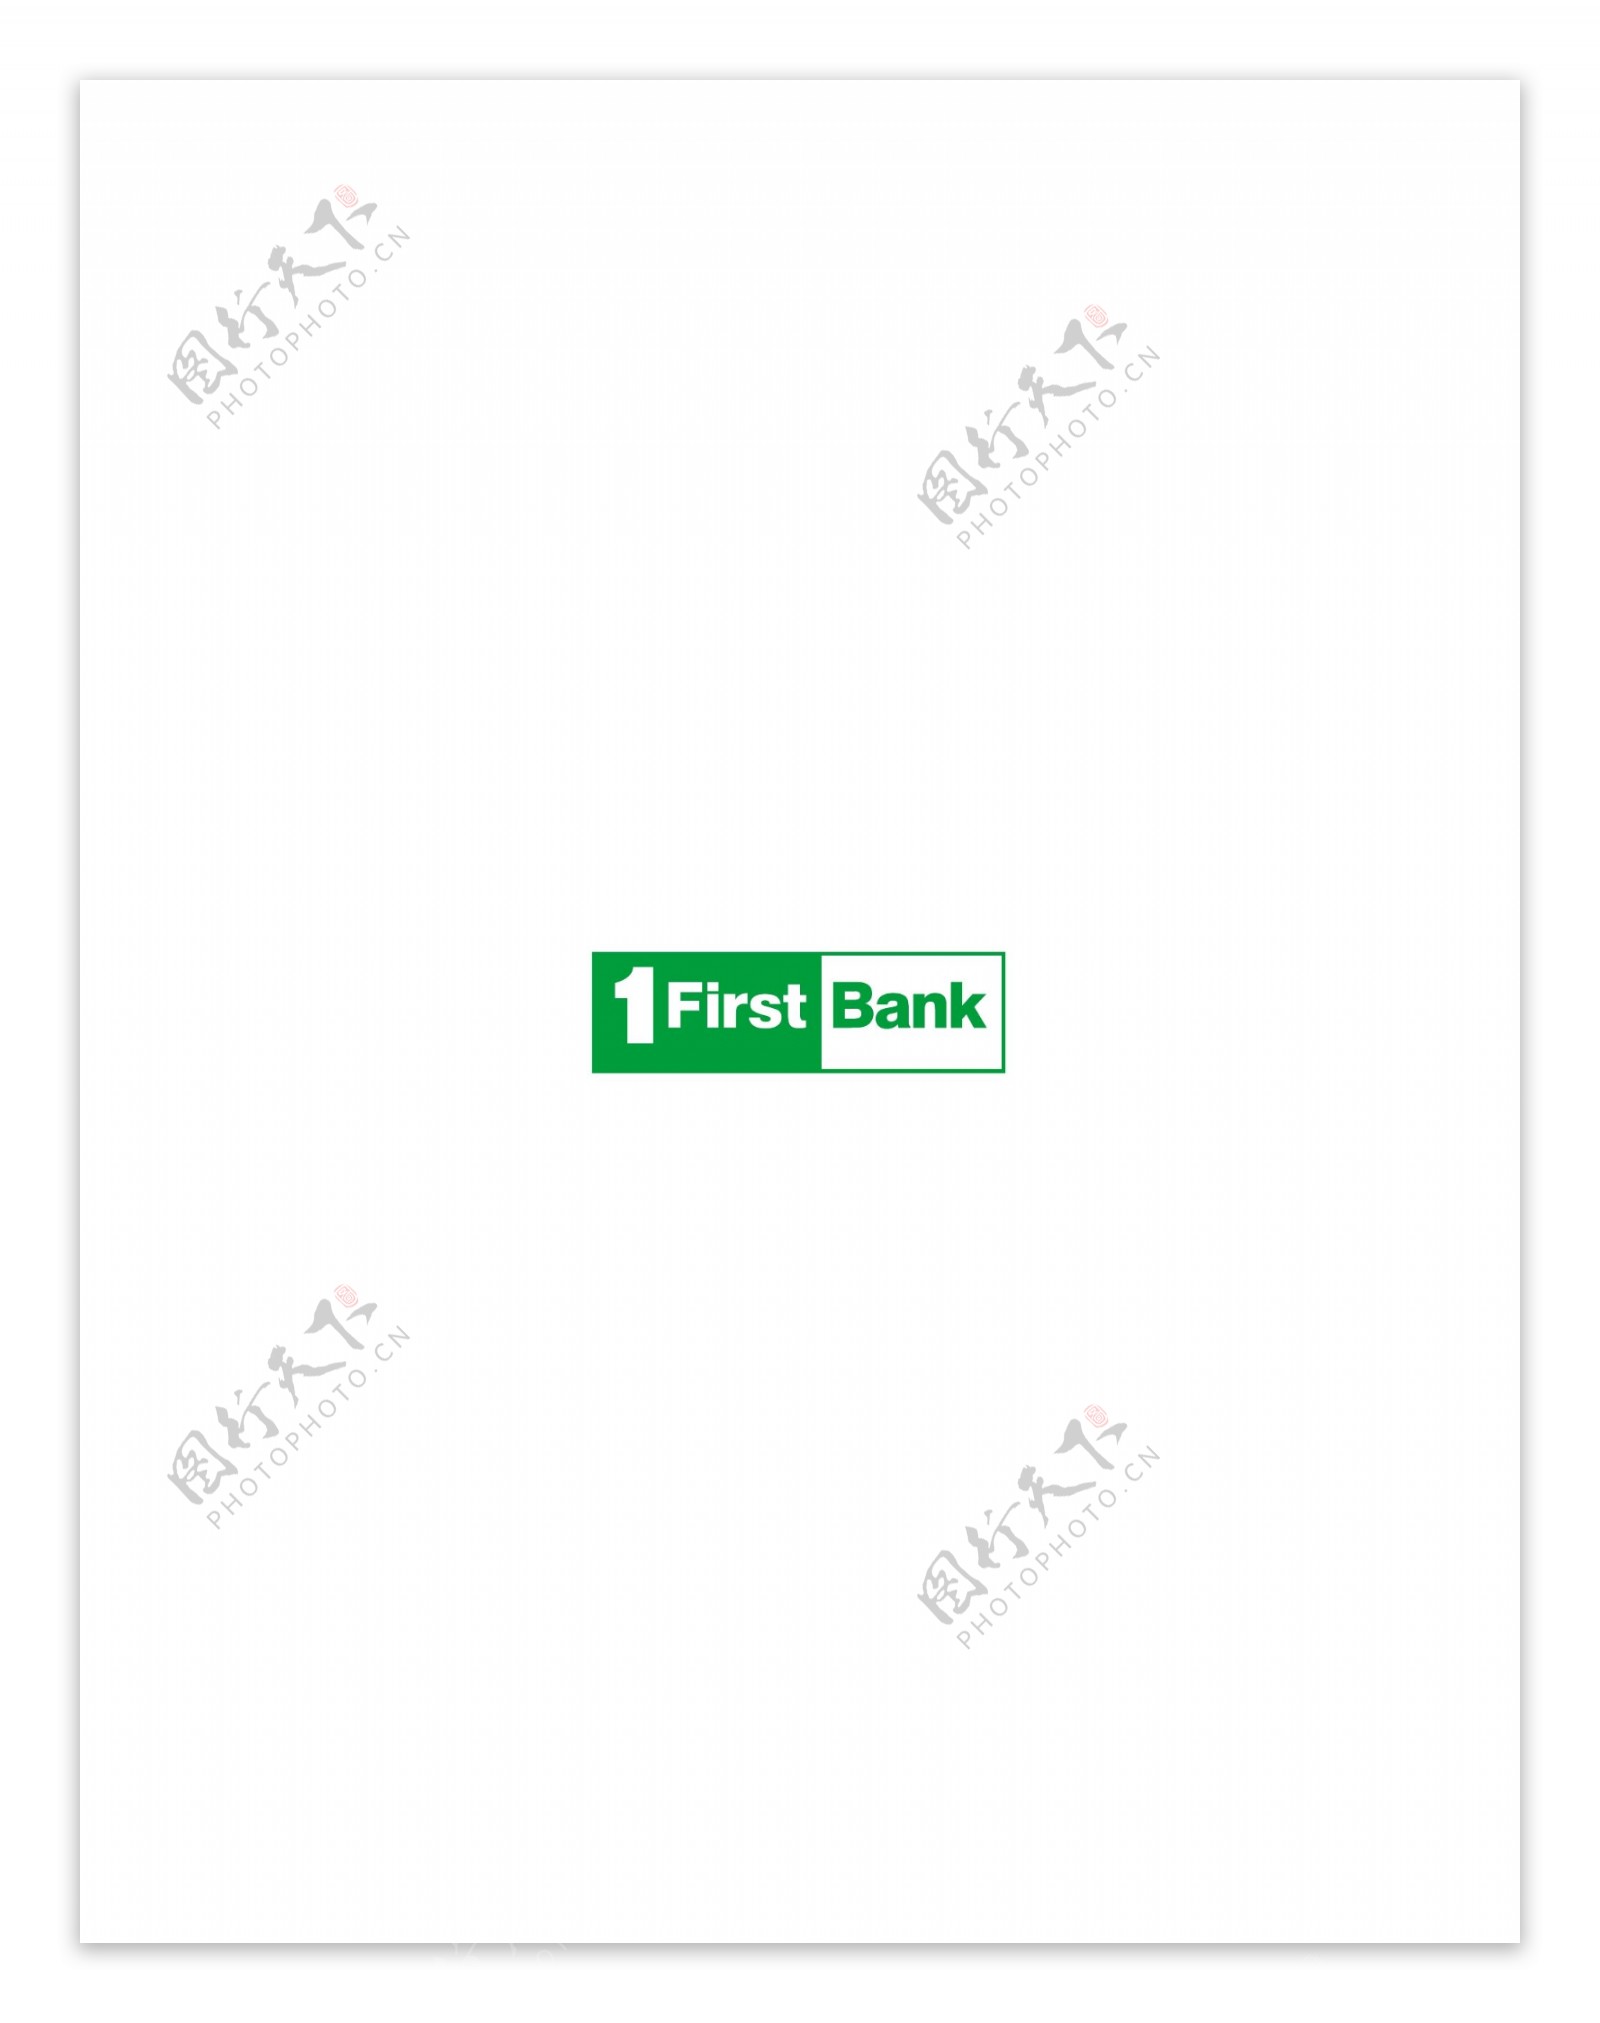 FirstBank1logo设计欣赏FirstBank1金融机构LOGO下载标志设计欣赏